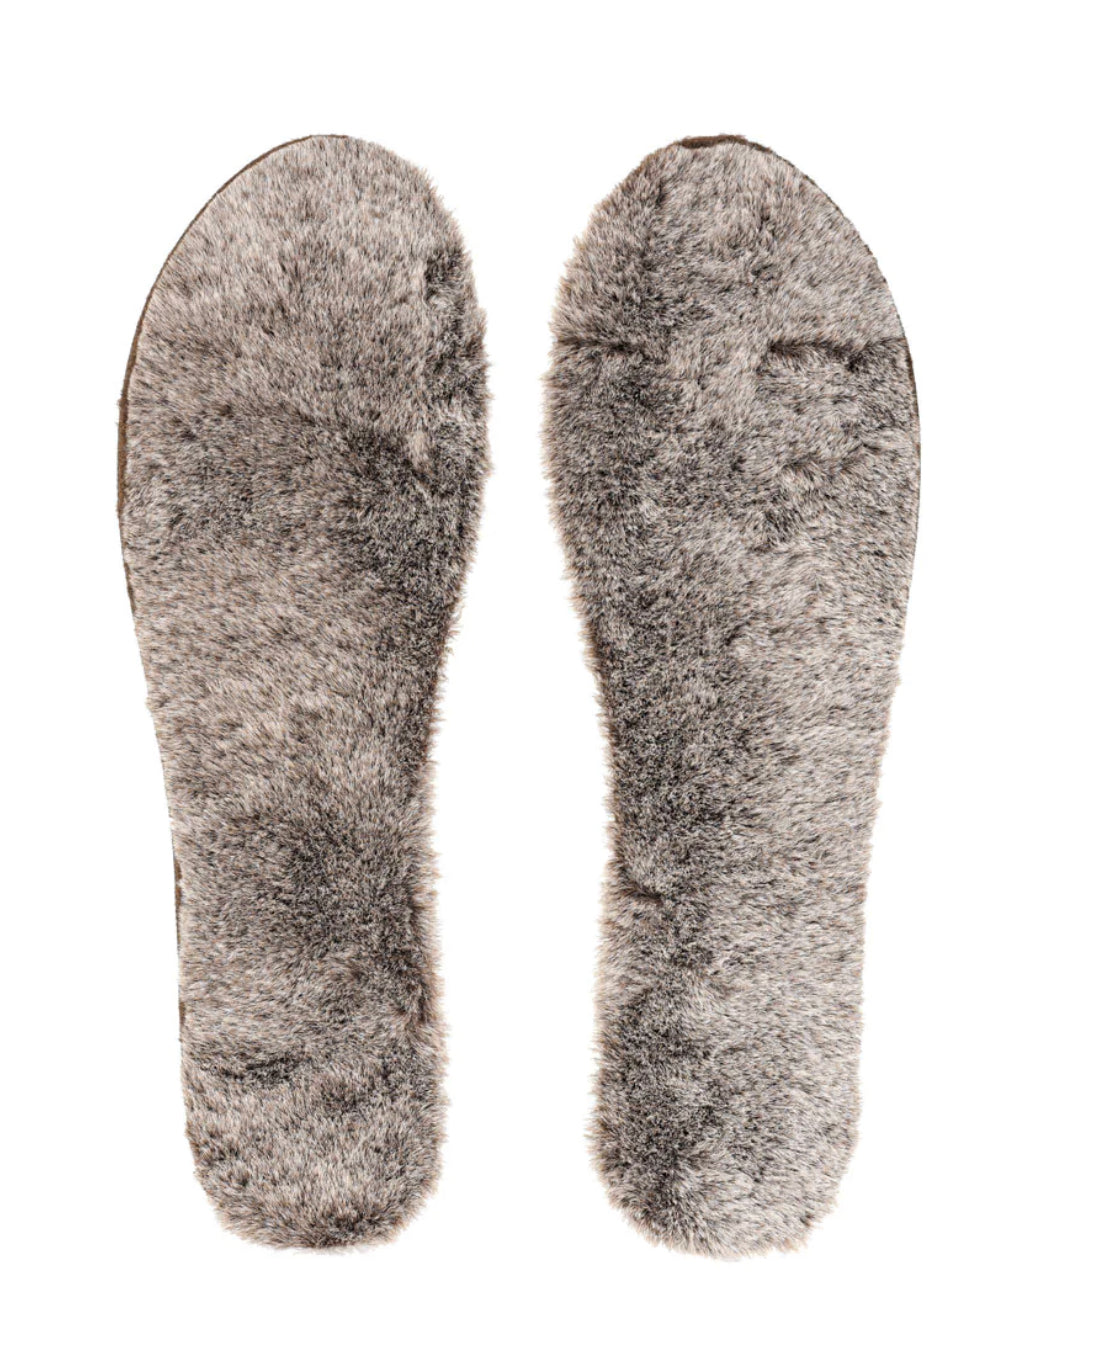 Flat Socks - Chestnut Fur